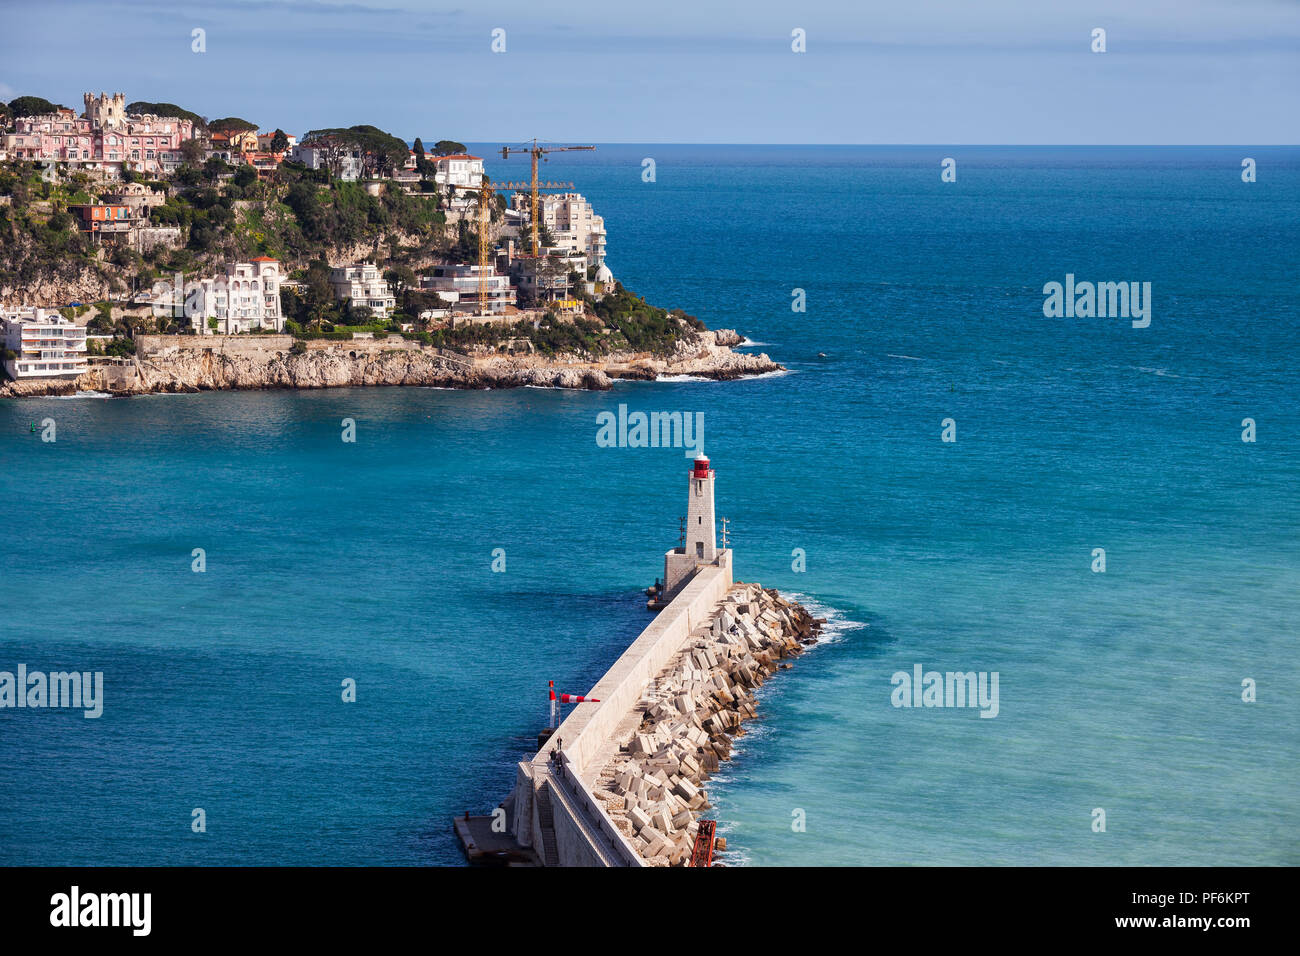 Città di Nizza in Francia, il Molo sul Mare Mediterraneo con Phare de Nice faro sulla Riviera Francese, vista dall'alto. Foto Stock